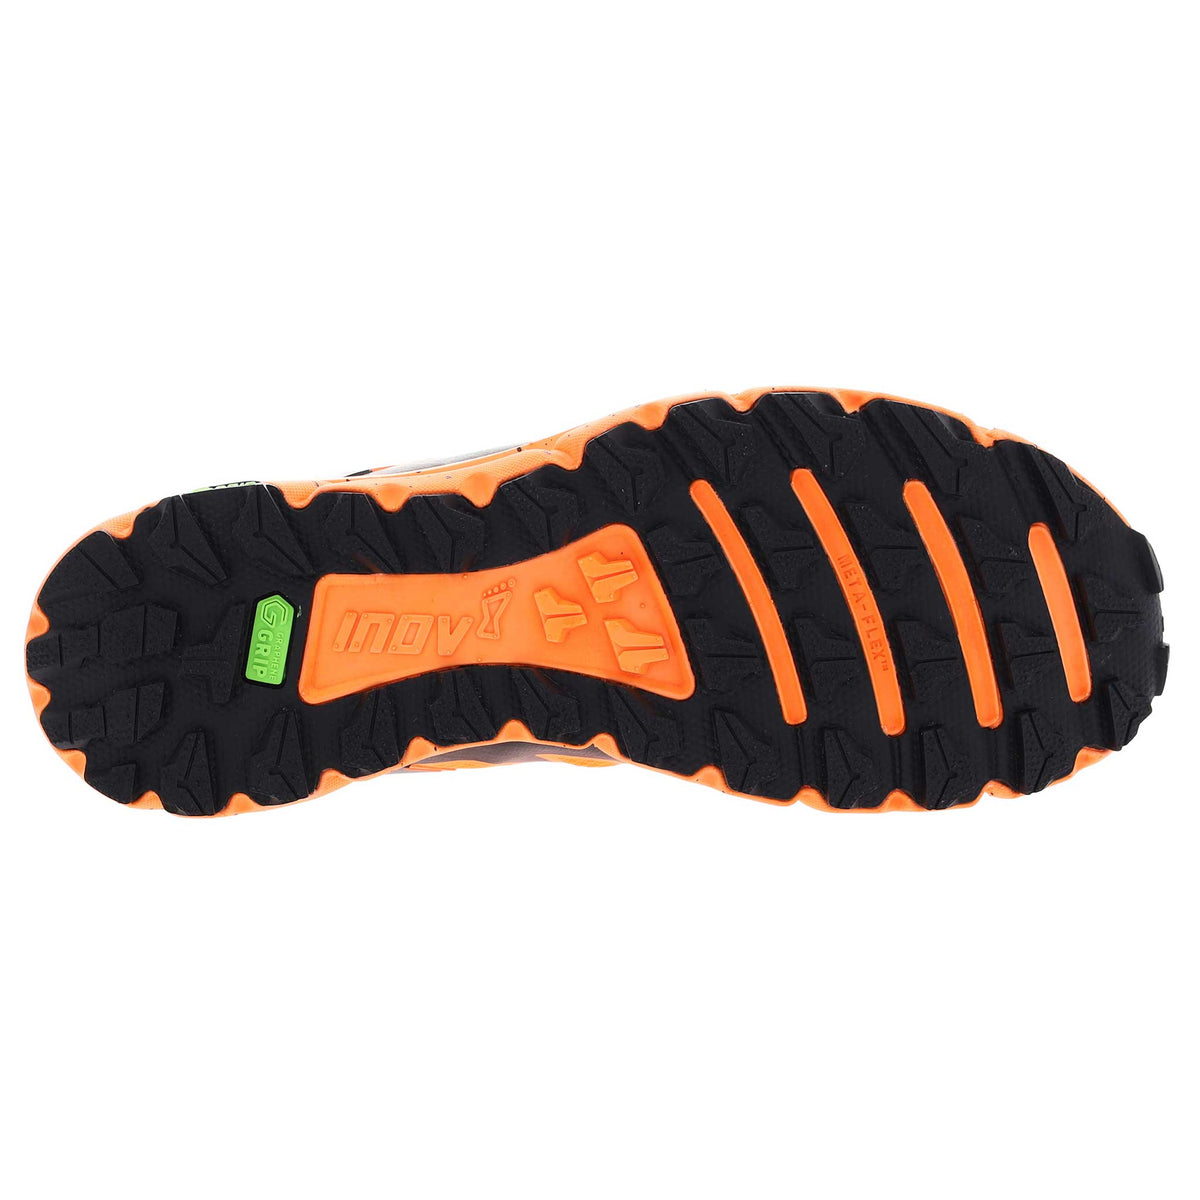 Inov-8 Terraultra G 270 chaussures de course à pied trail pour homme orange/noir semelle